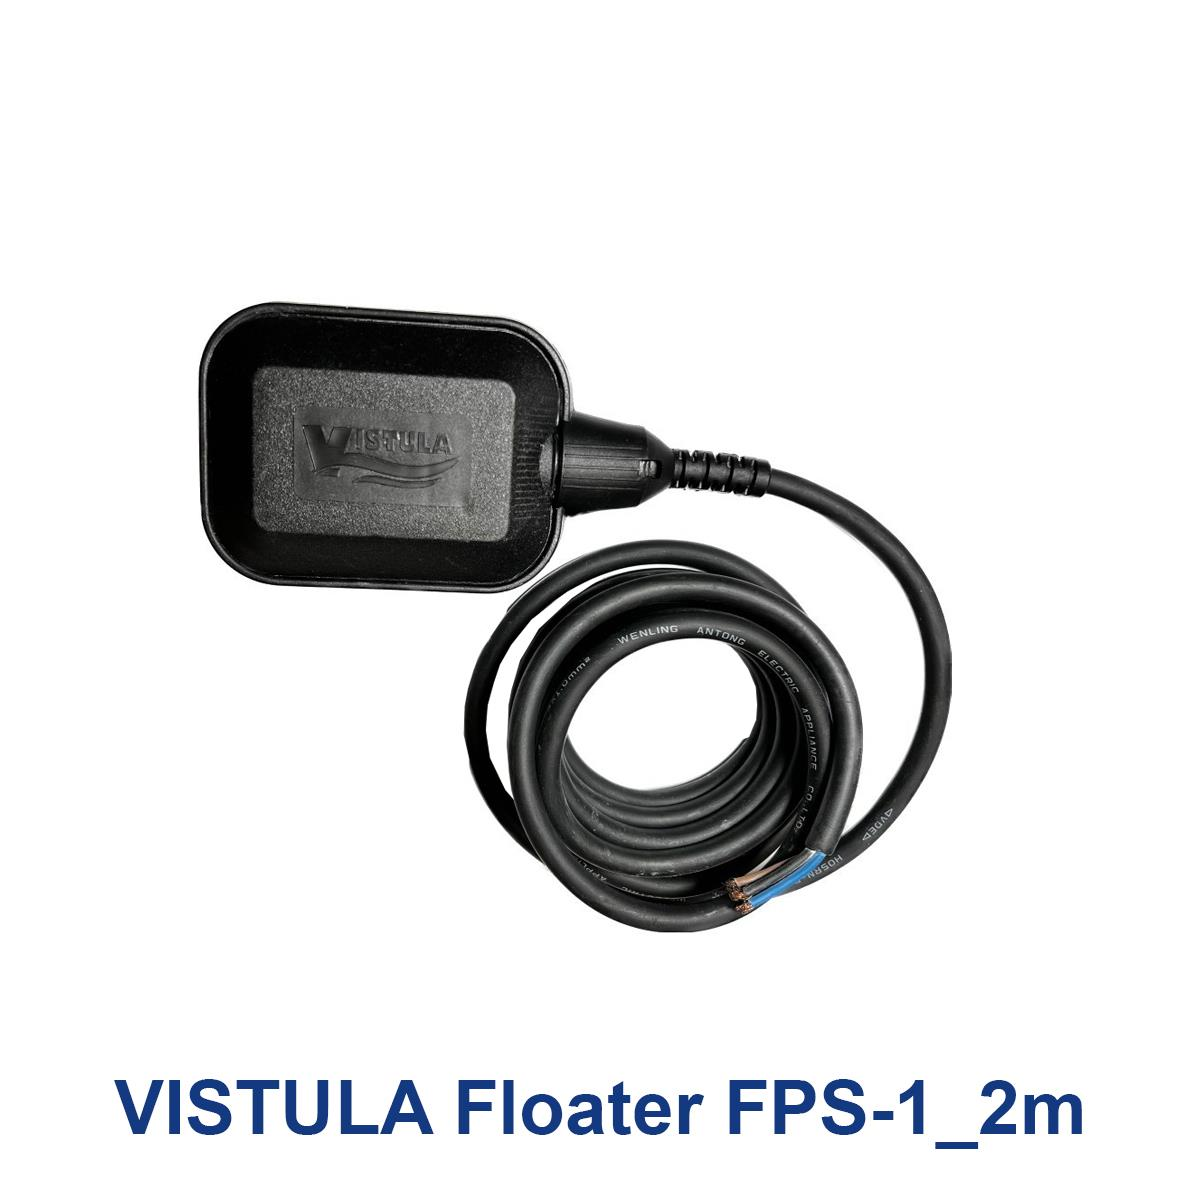 VISTULA-Floater-FPS-1_2m